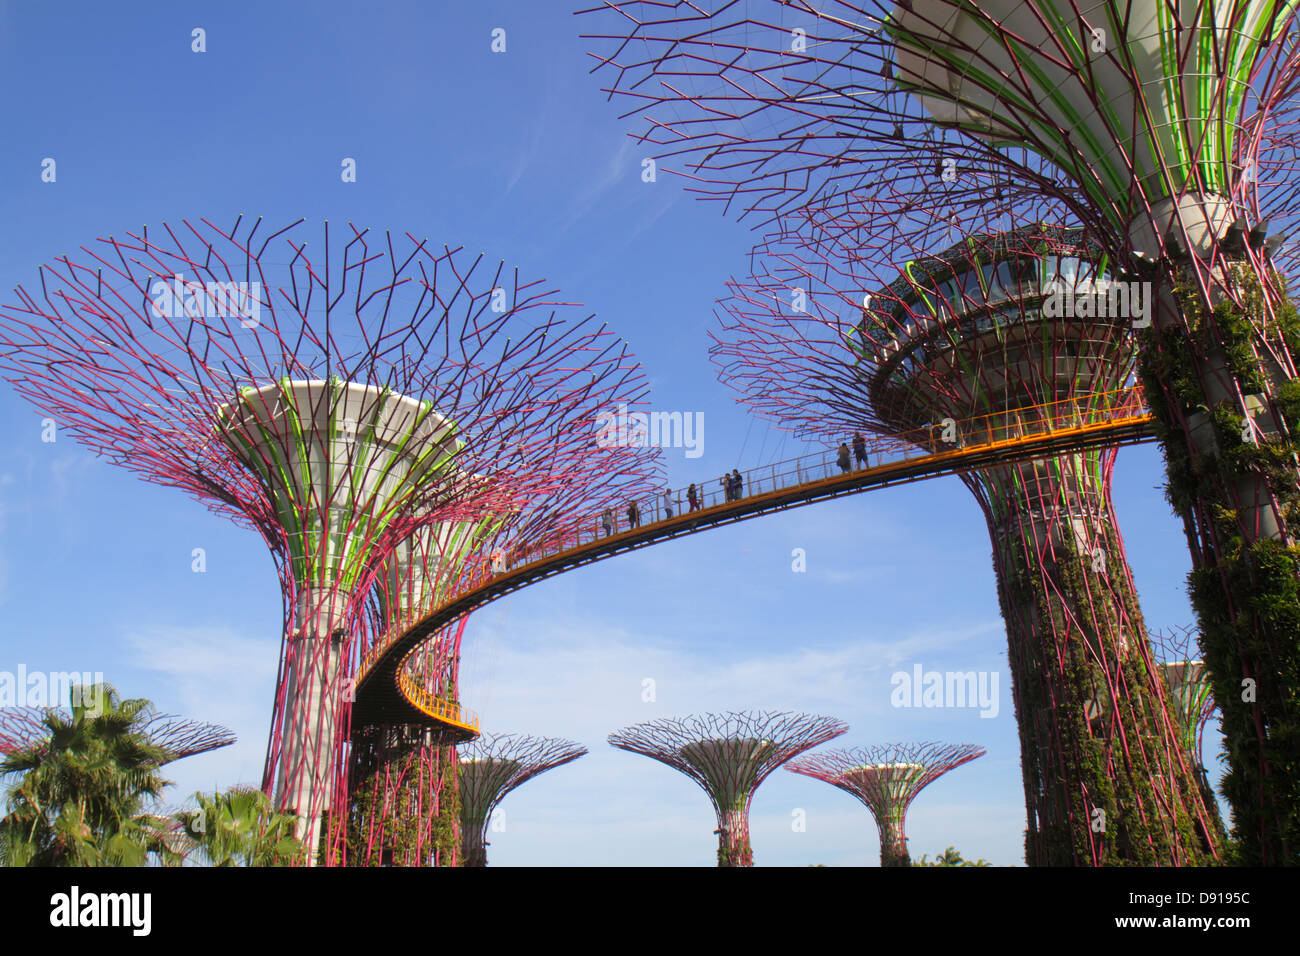 Jardins de Singapour au bord de la baie, parc, Supertrees, passerelle surélevée, Sing130202177 Banque D'Images